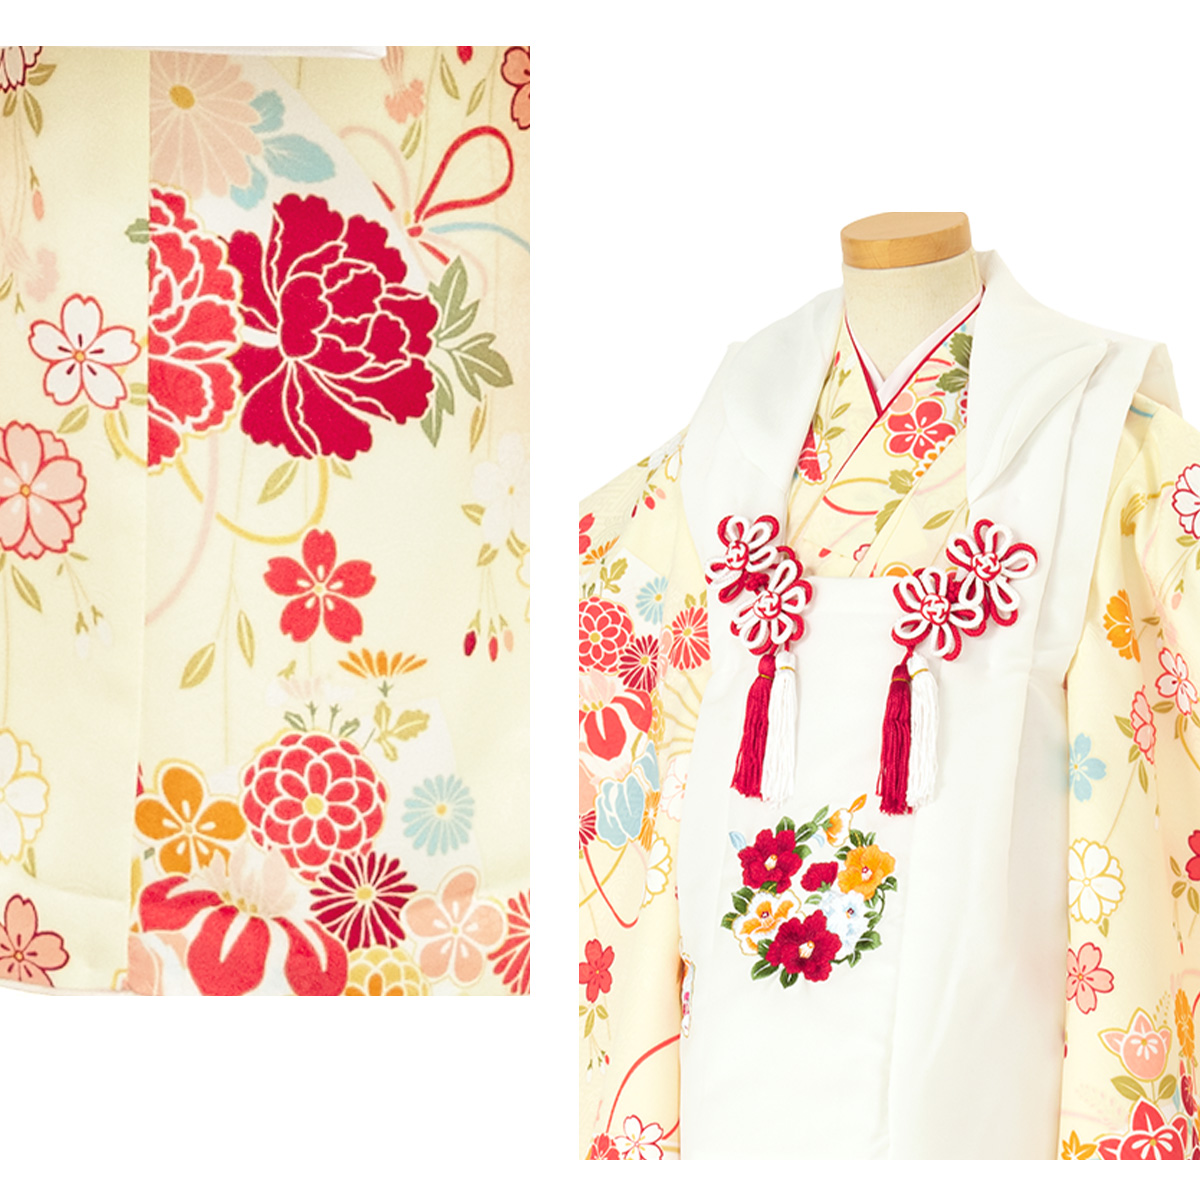  "Семь, пять, три" кимоно 3 лет распродажа девочка три лет кимоно комплект . ткань комплект белый желтый цвет ... вышивка кимоно hifu кимоно японская одежда японский костюм женщина . ребенок бесплатная доставка 